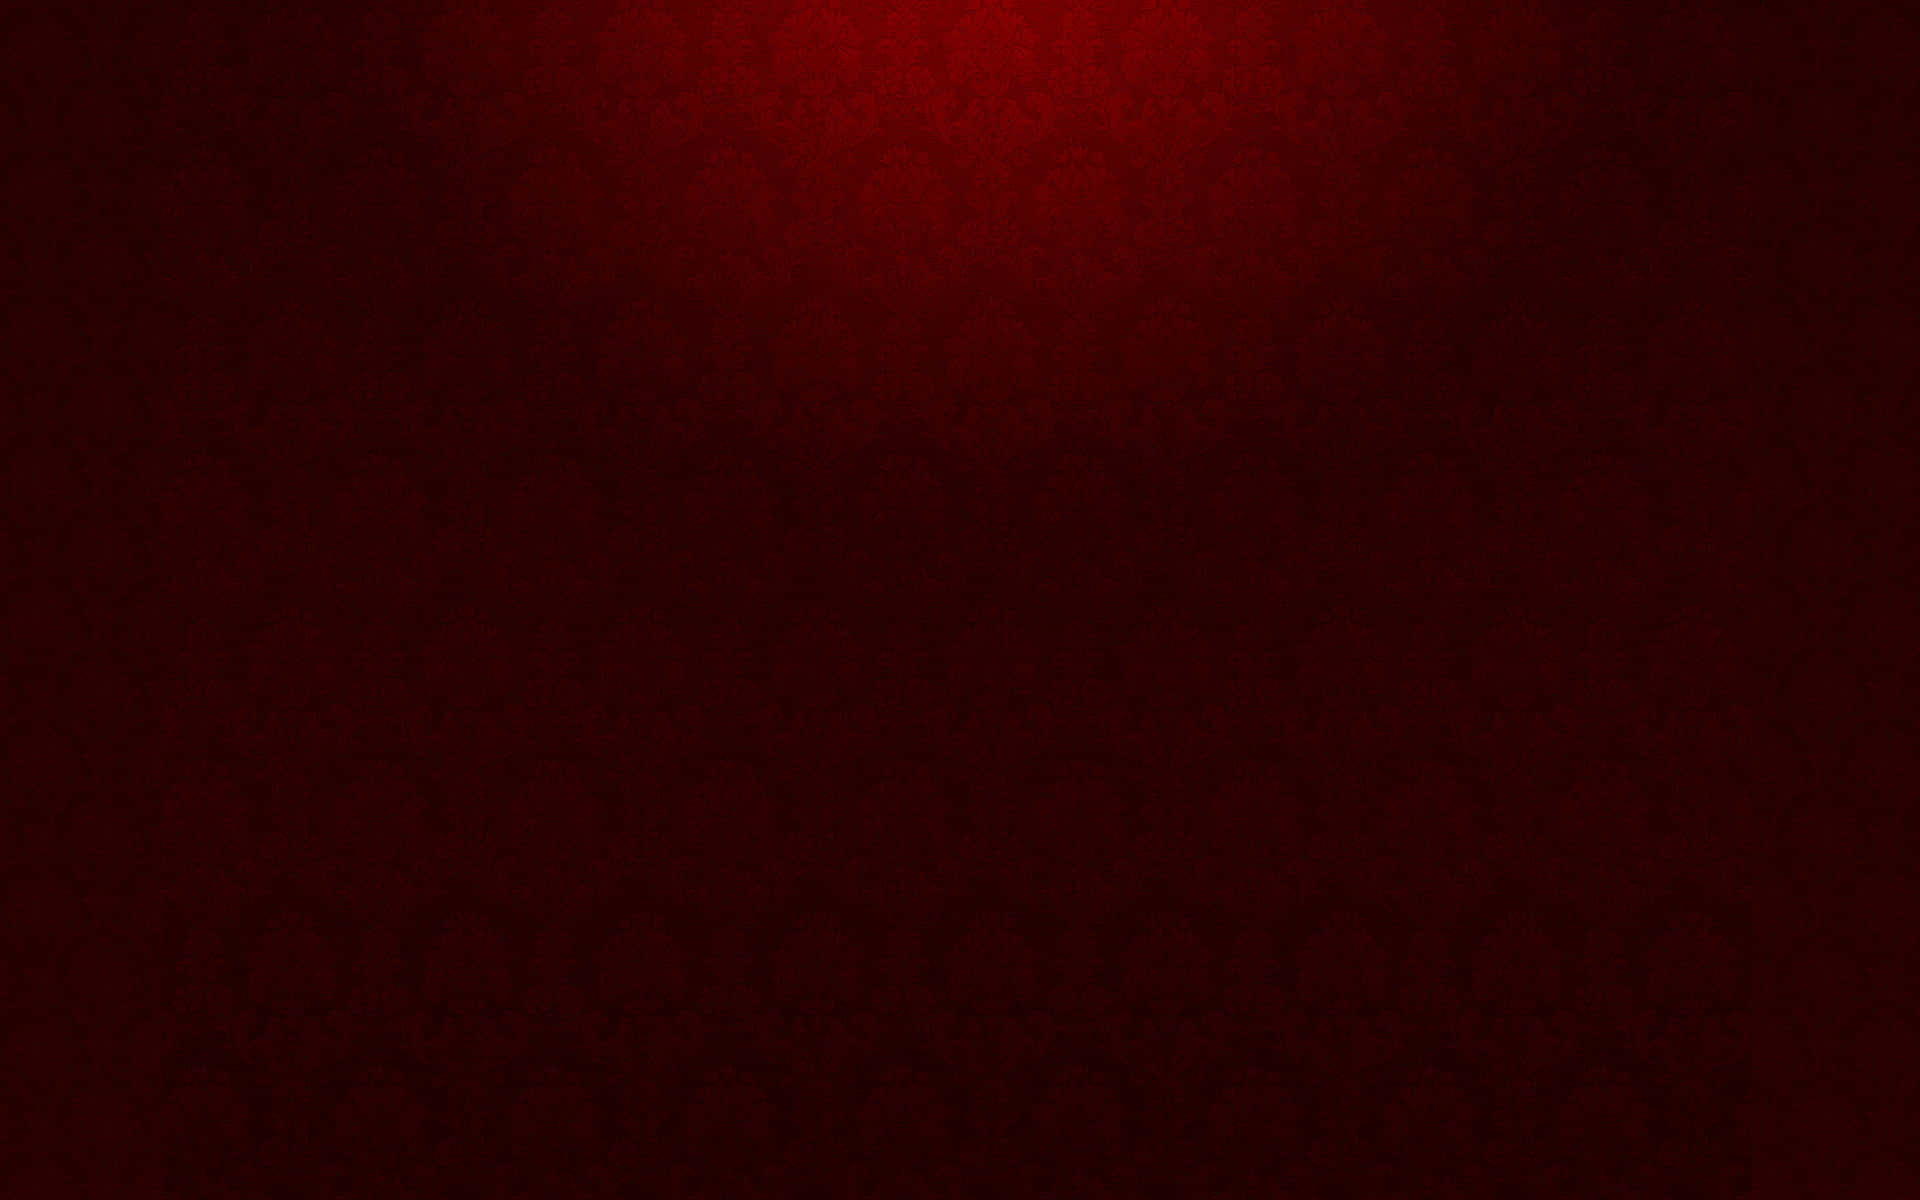 Fundovermelho Escuro Textura Vermelha Escura Com Um Holofote